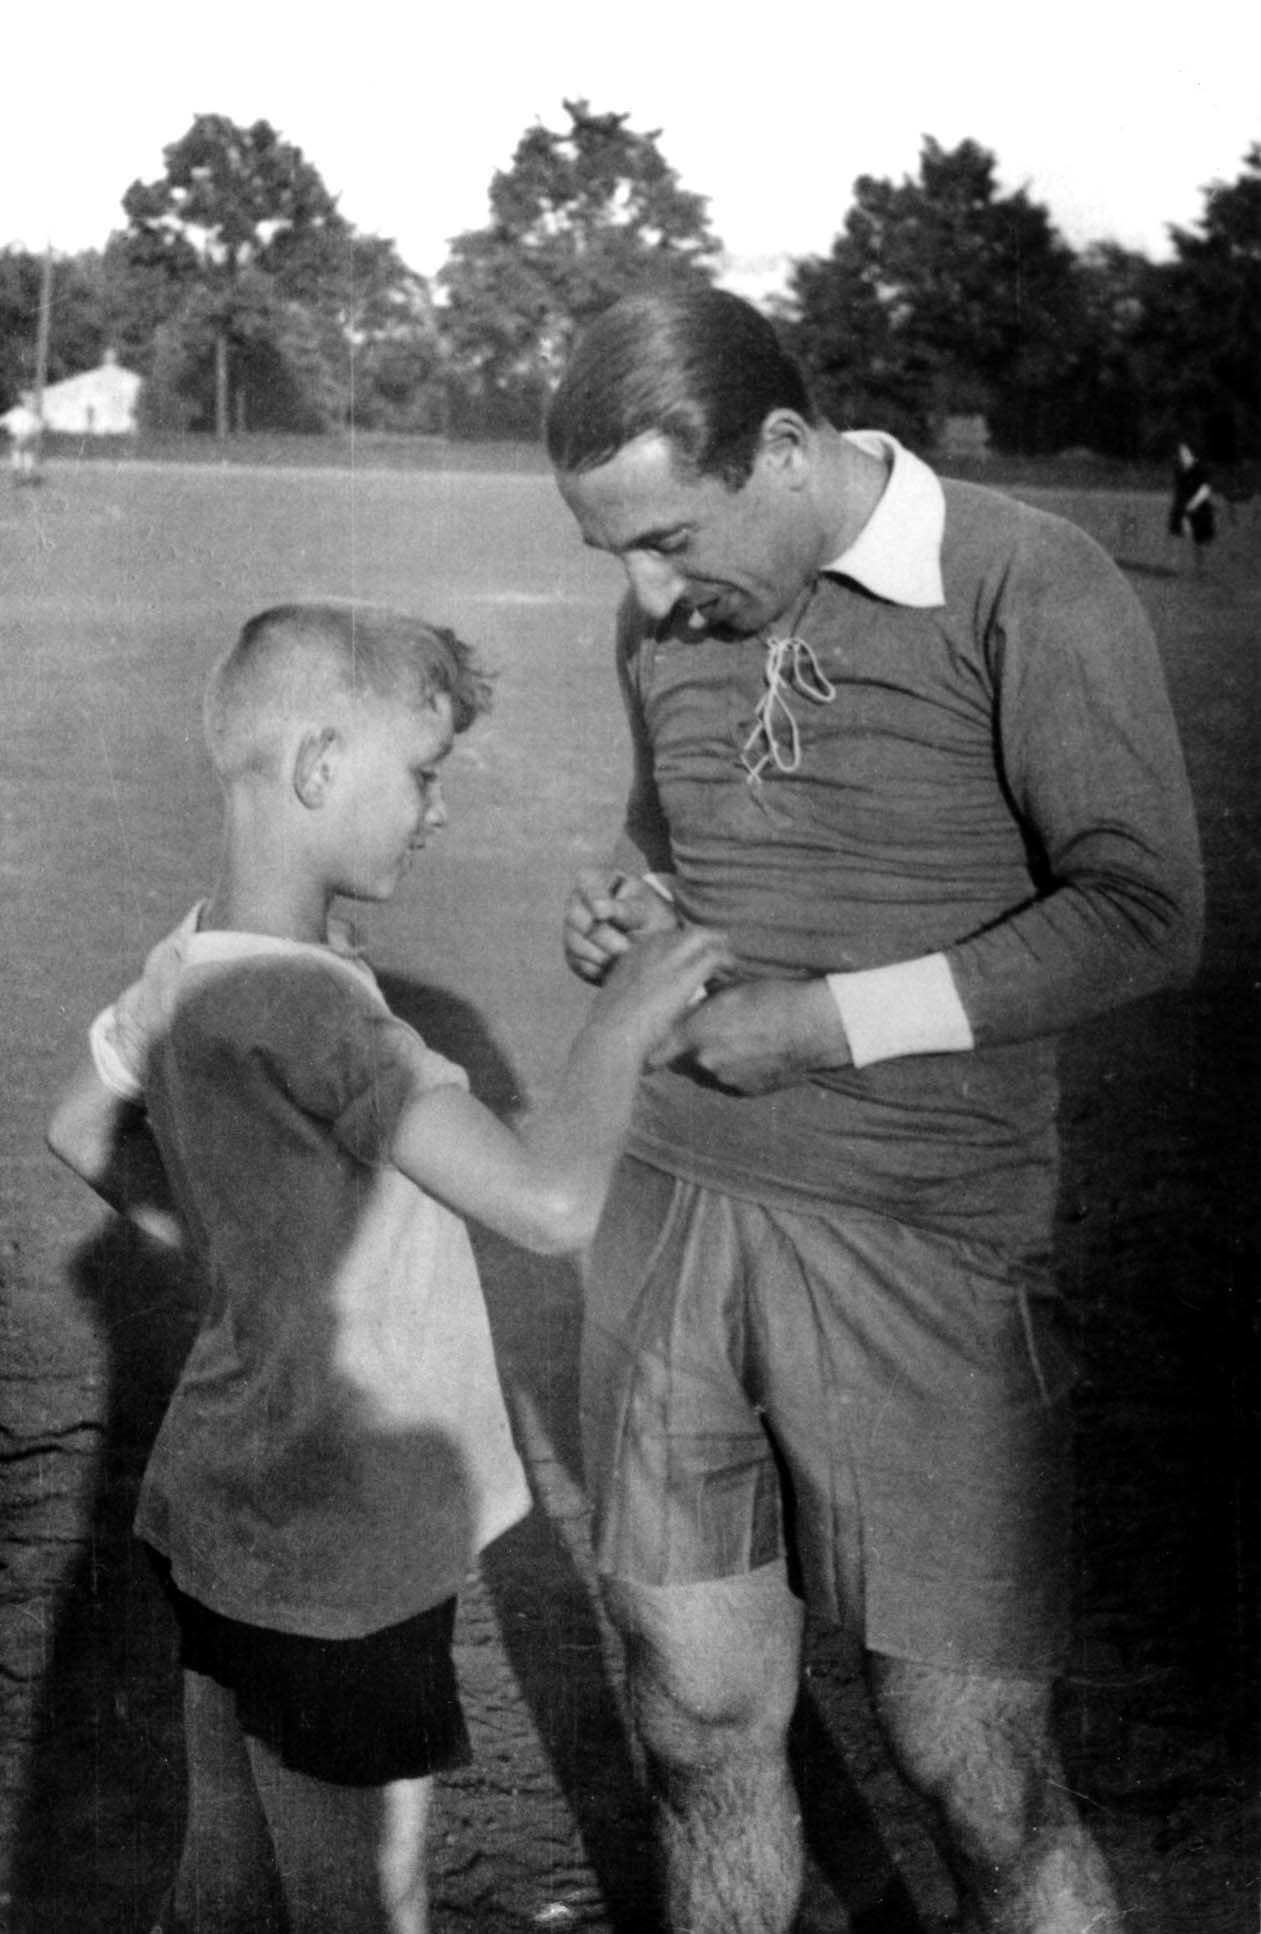 ברלין, גרמניה, הטניסאי היהודי דניאל פרן (Prenn) בעת פעילות ספורט של תנועת "בר-כוכבא", 1930.